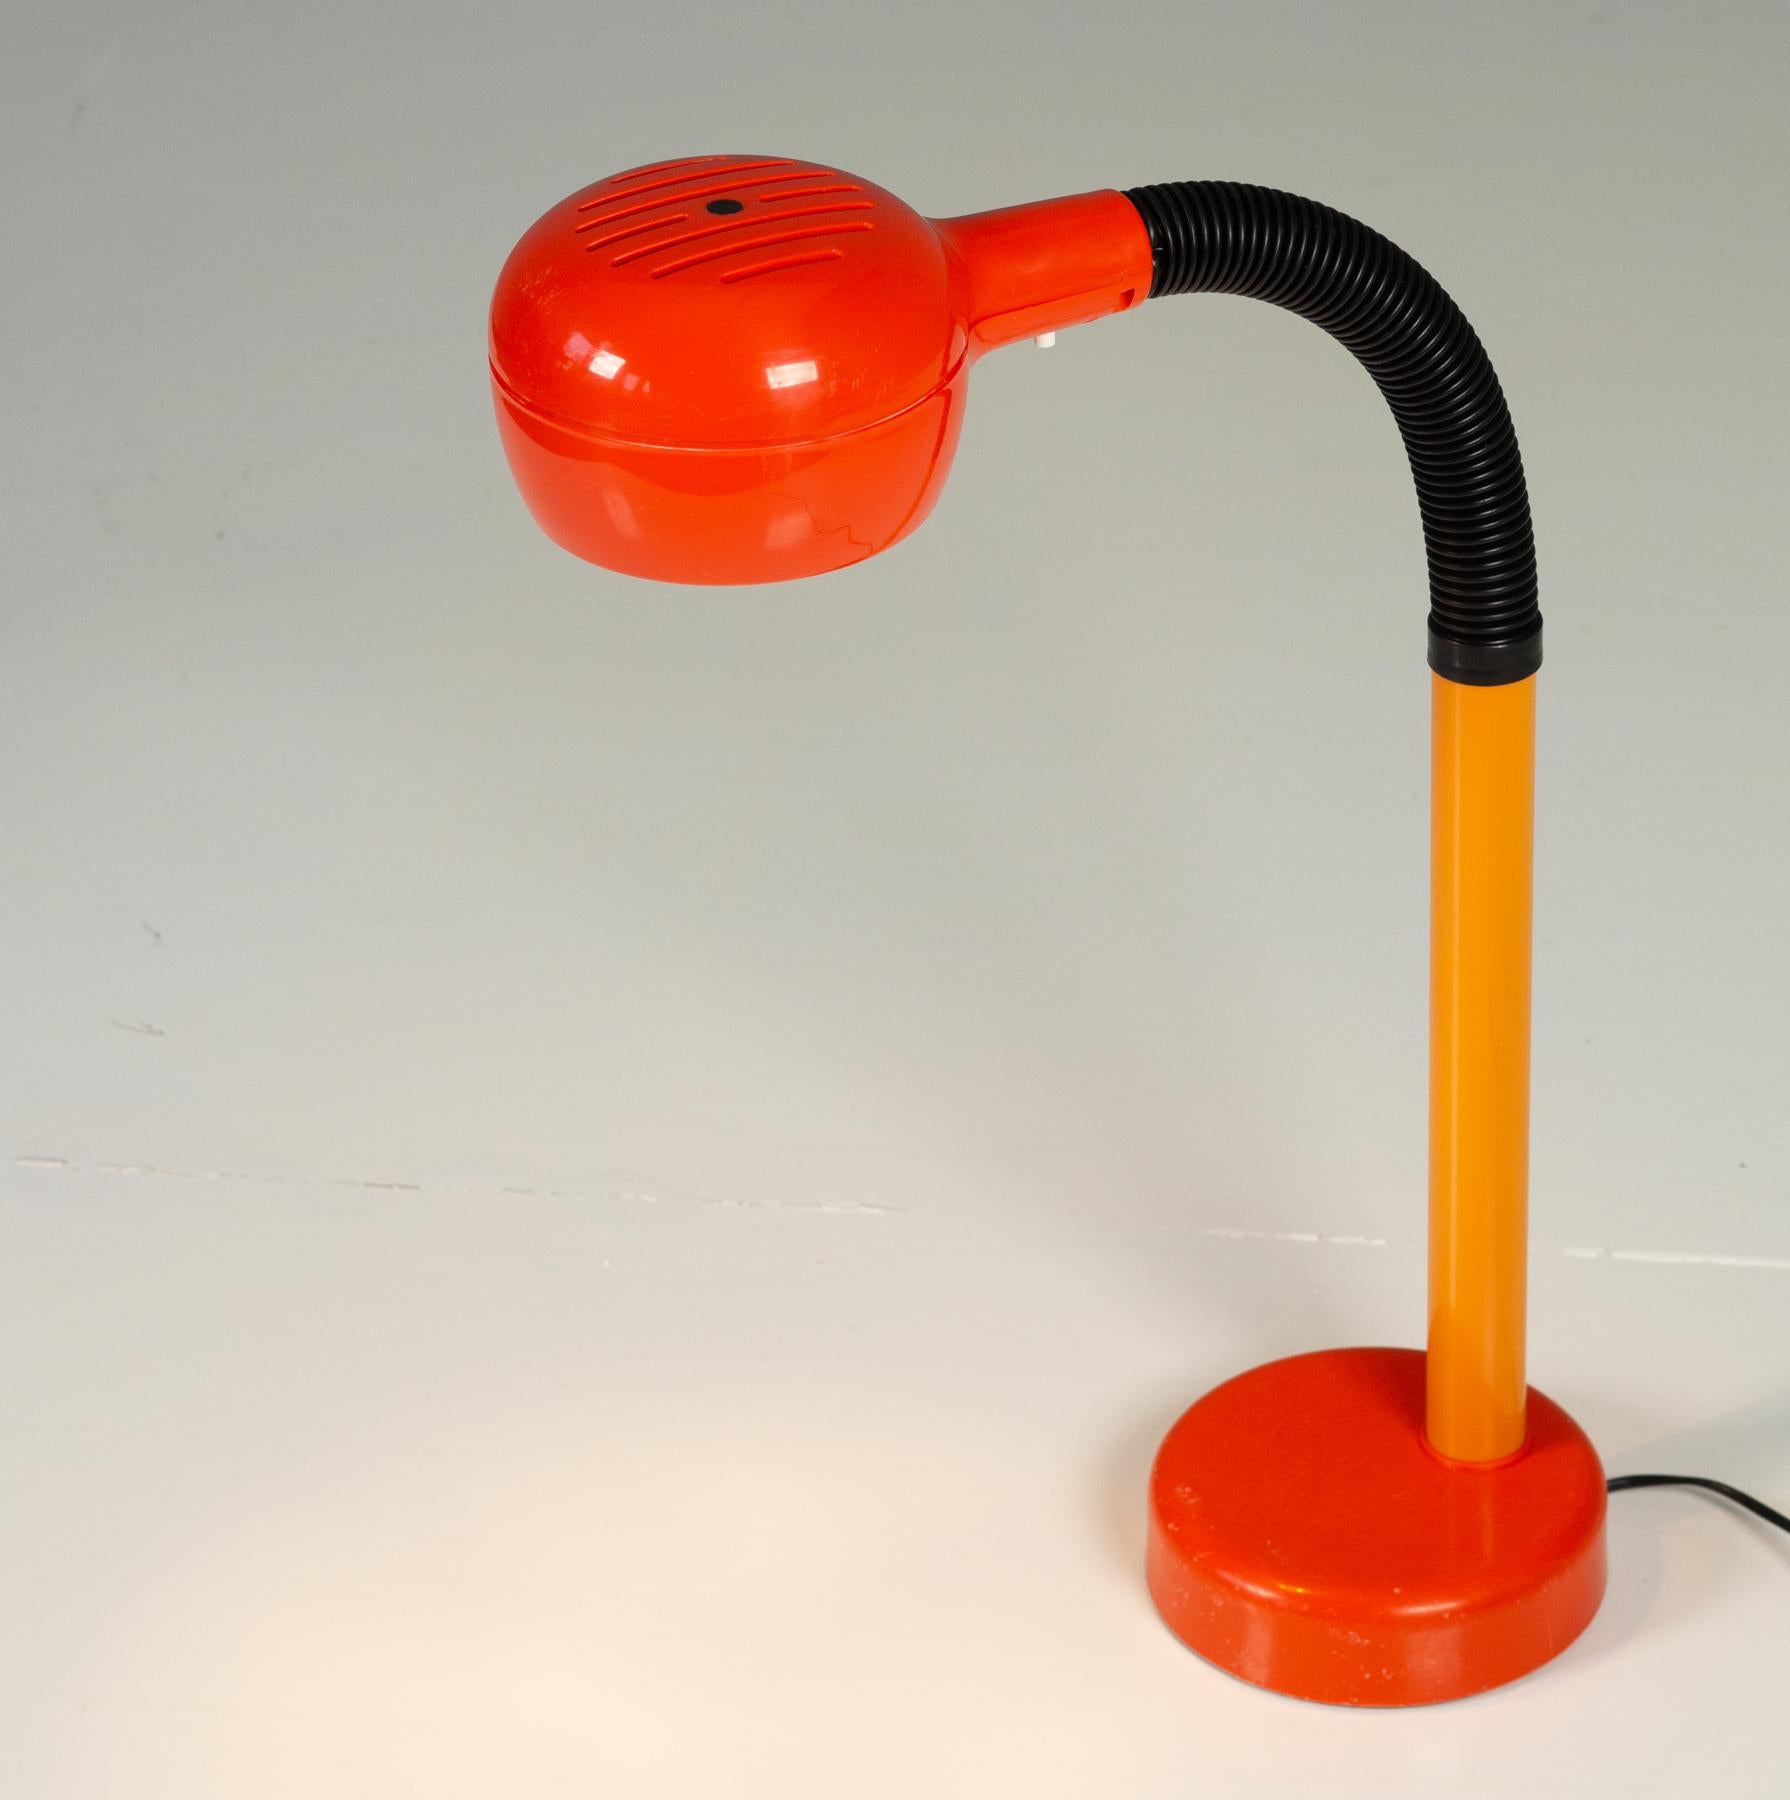 Fagerhults Cobra Schreibtischlampe 1975.

Abgerundet und ausgewogen, mit einem funky Vintage-Orange. Der Schwanenhals kann in jede gewünschte Position gebracht werden. Dieser Entwurf wurde 1975 mit dem renommierten IF Design Award ausgezeichnet. Der